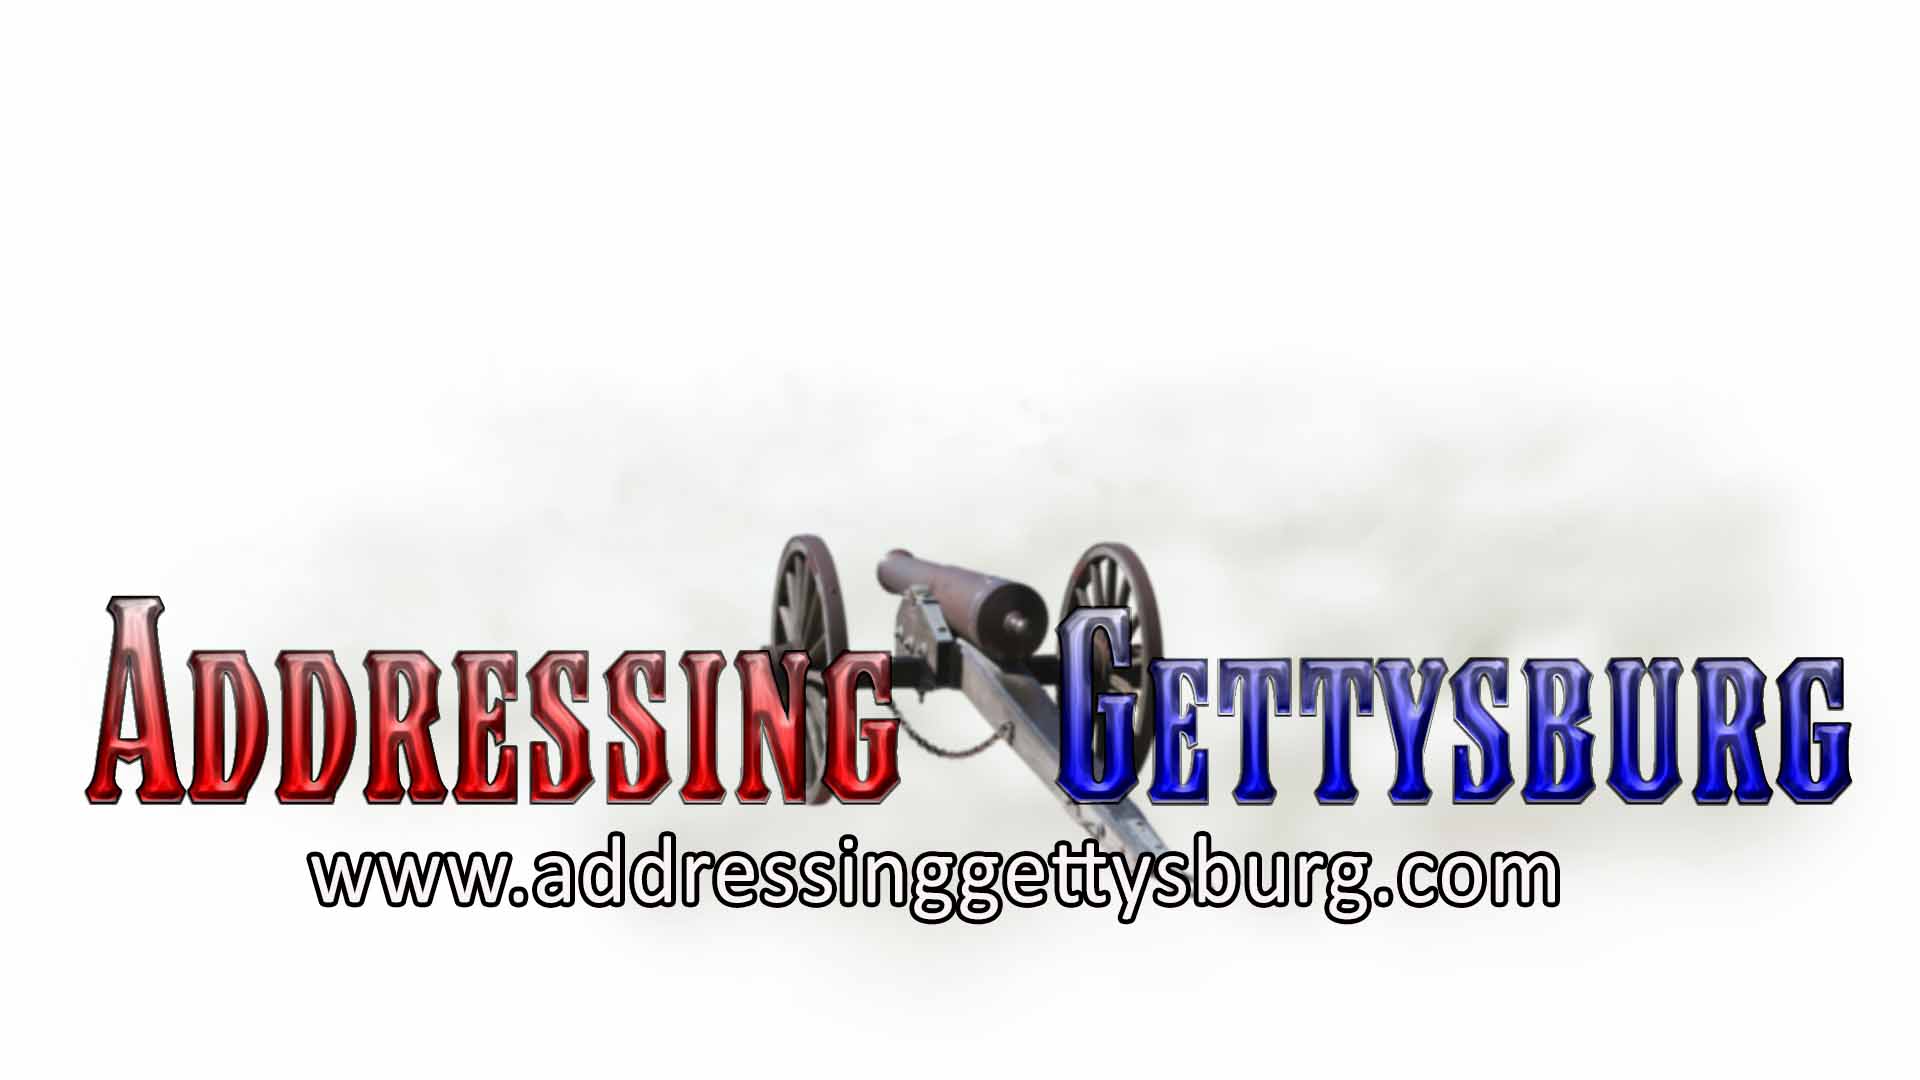 Addressing Gettysburg logo